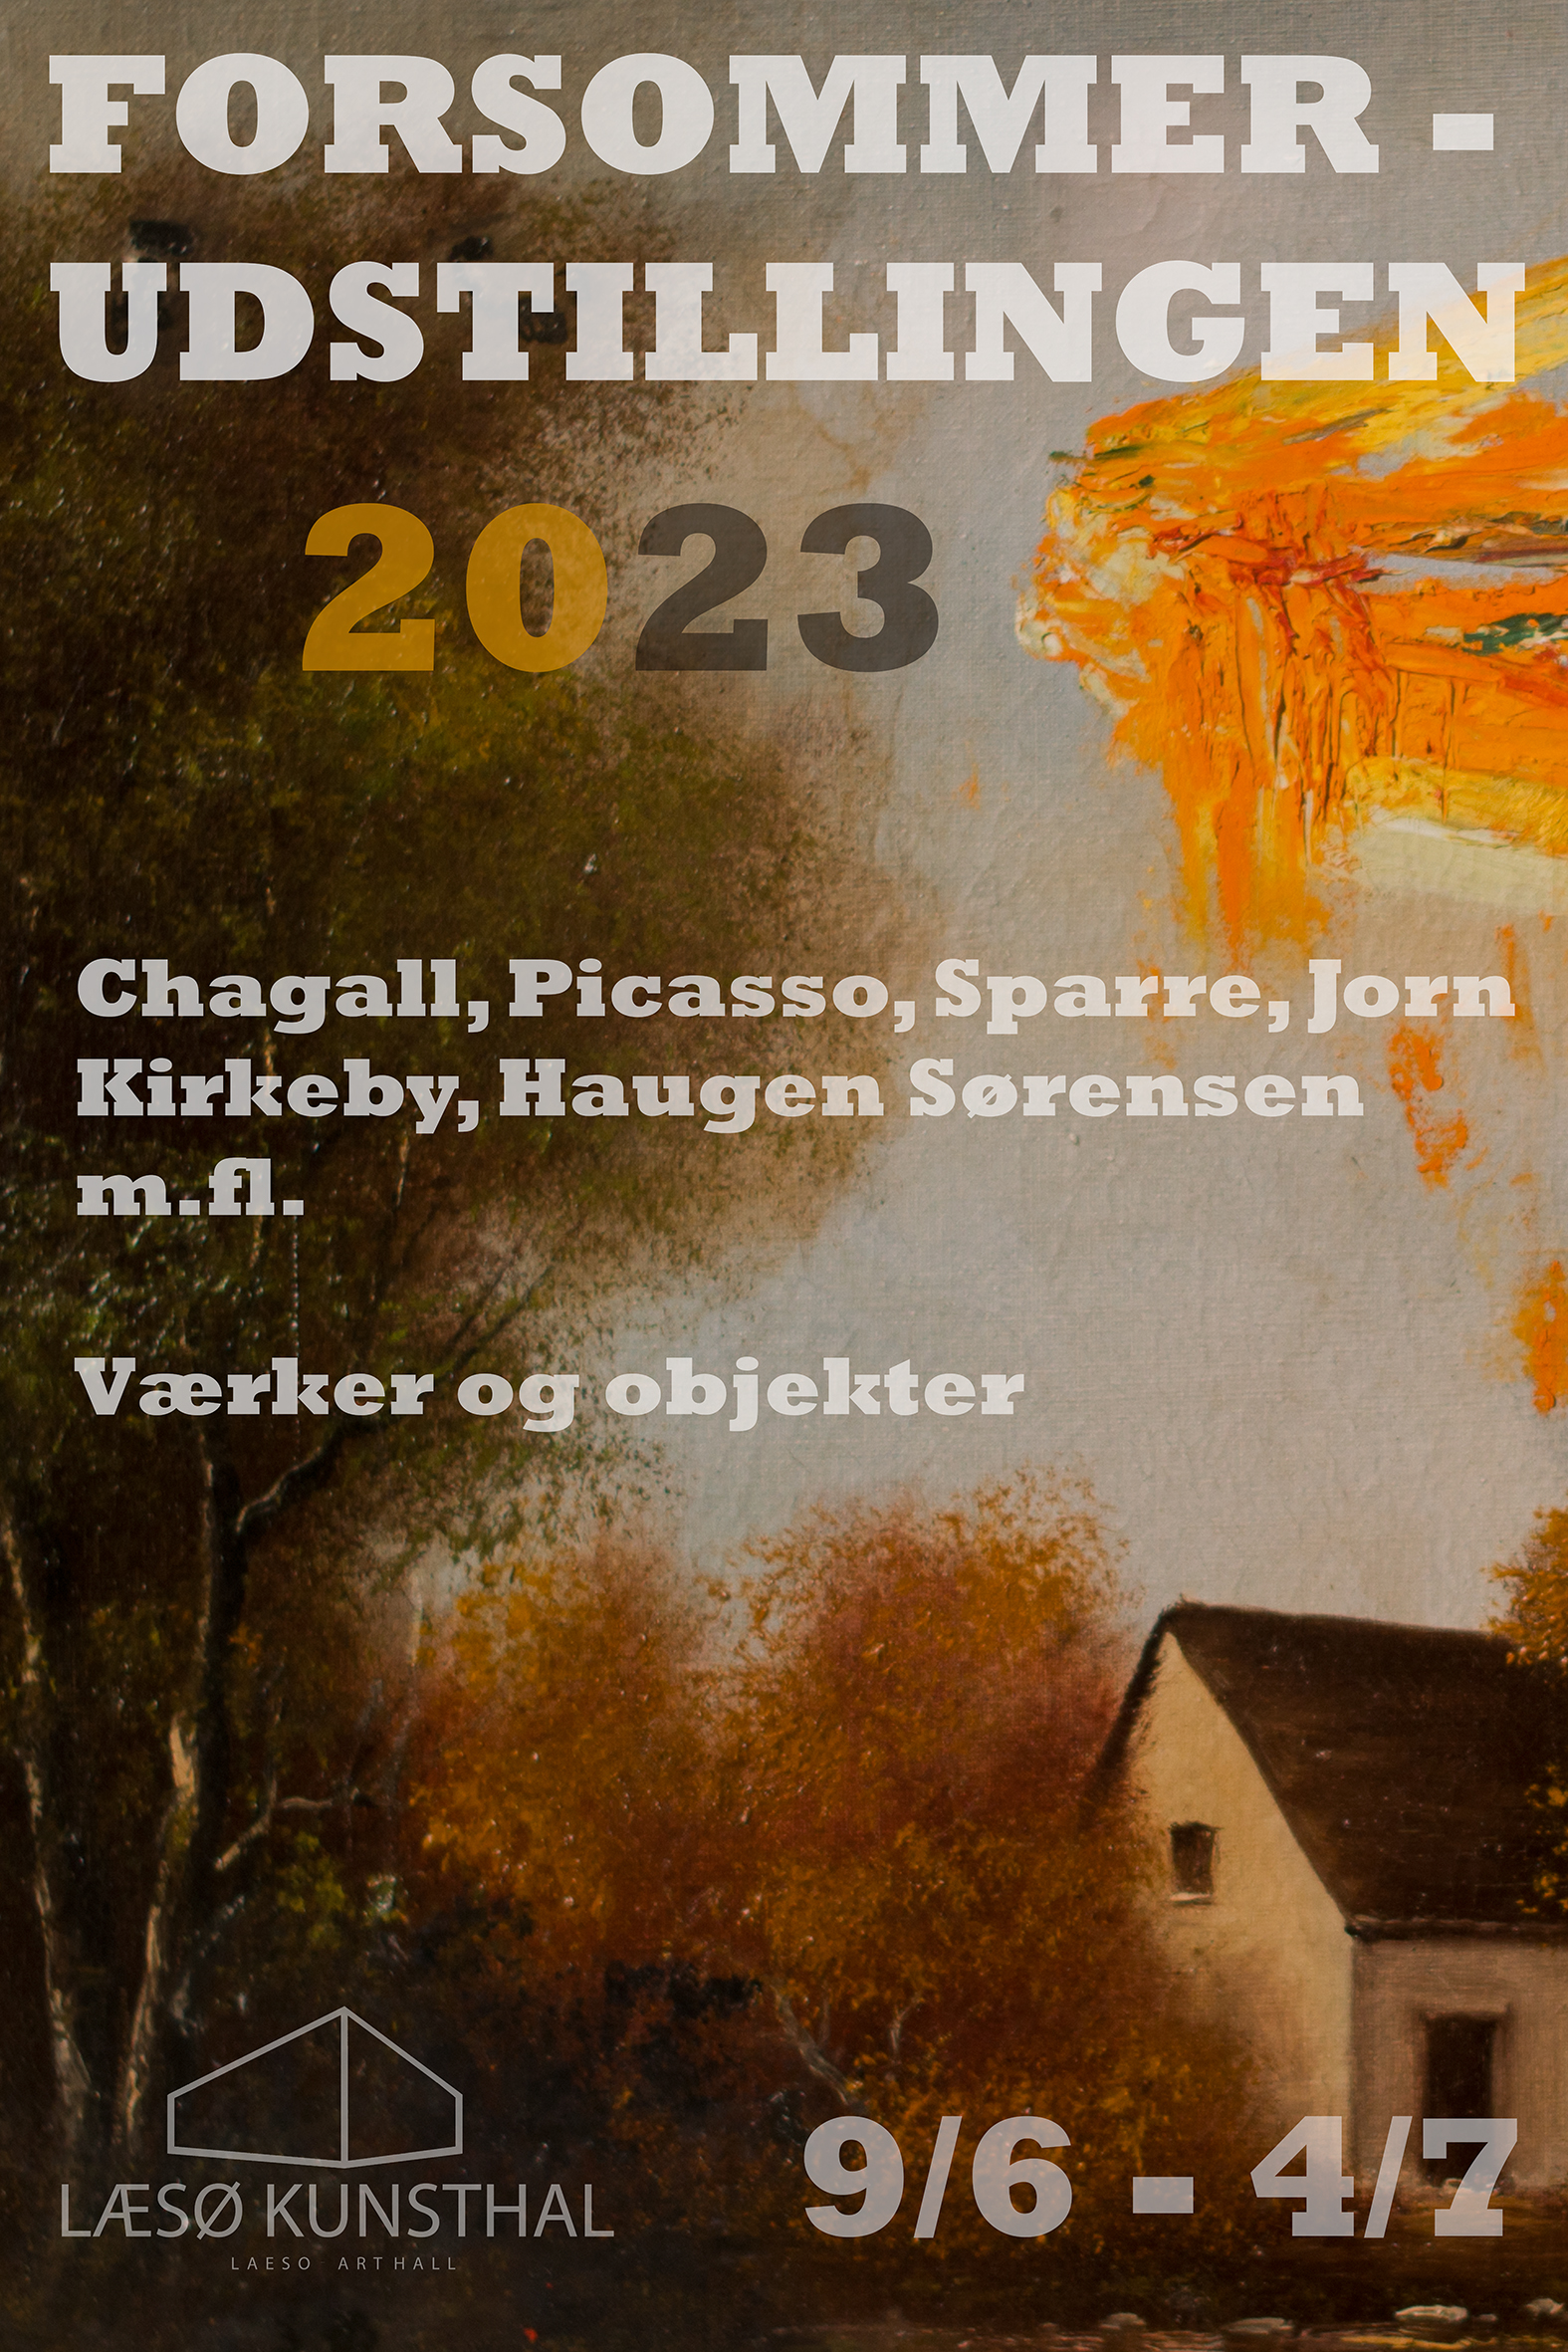 Plakat for Læsø Kunsthals forsommerudstilling 2023